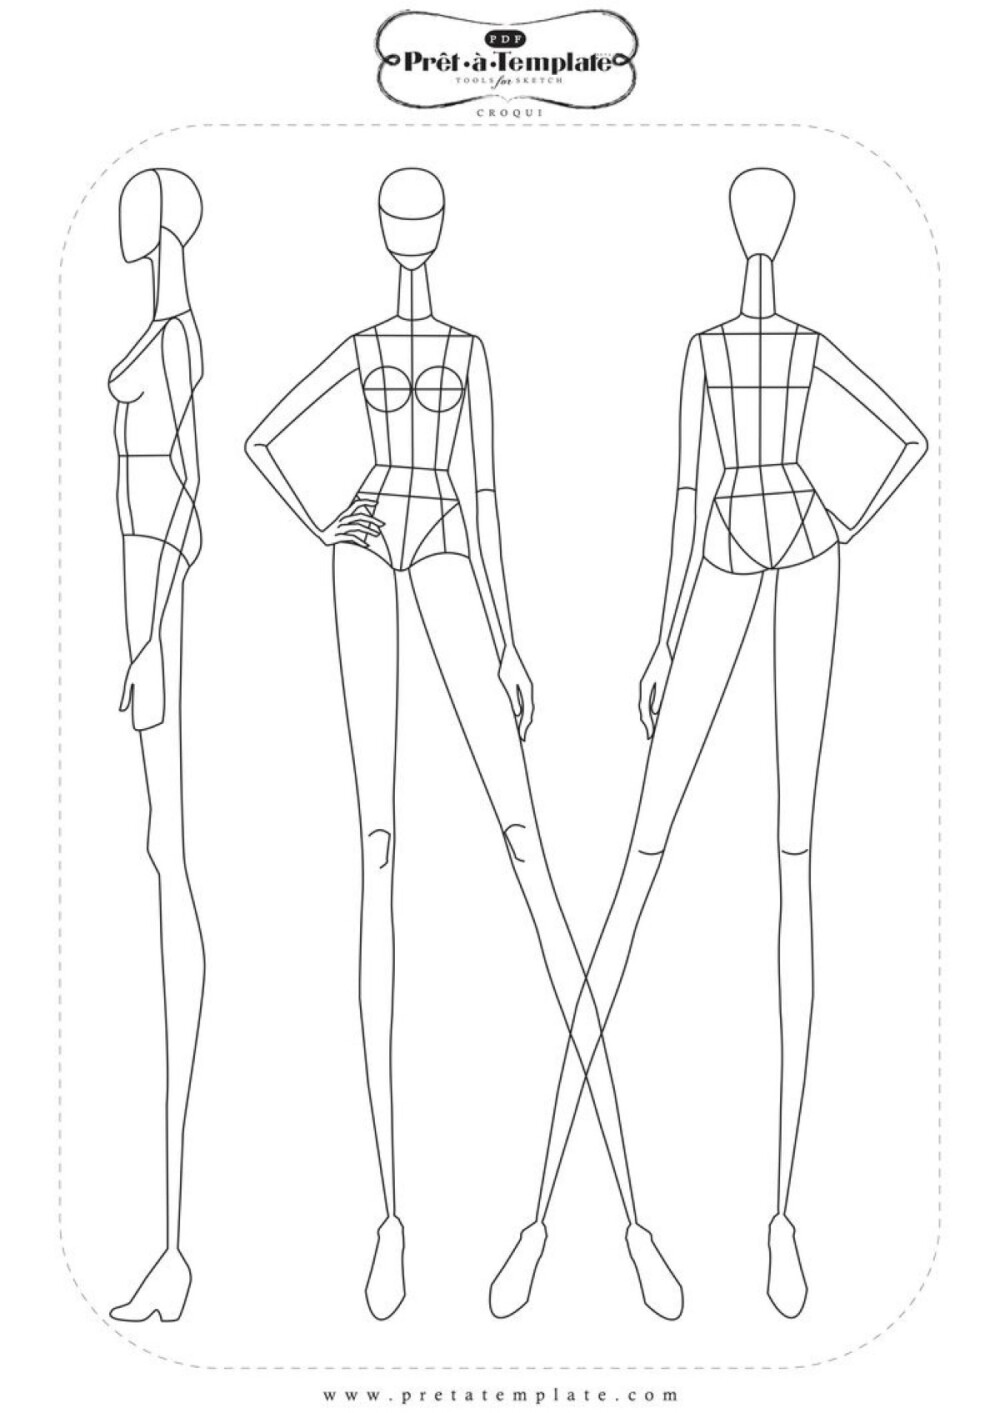 时装绘画 人体线稿 服装设计素材